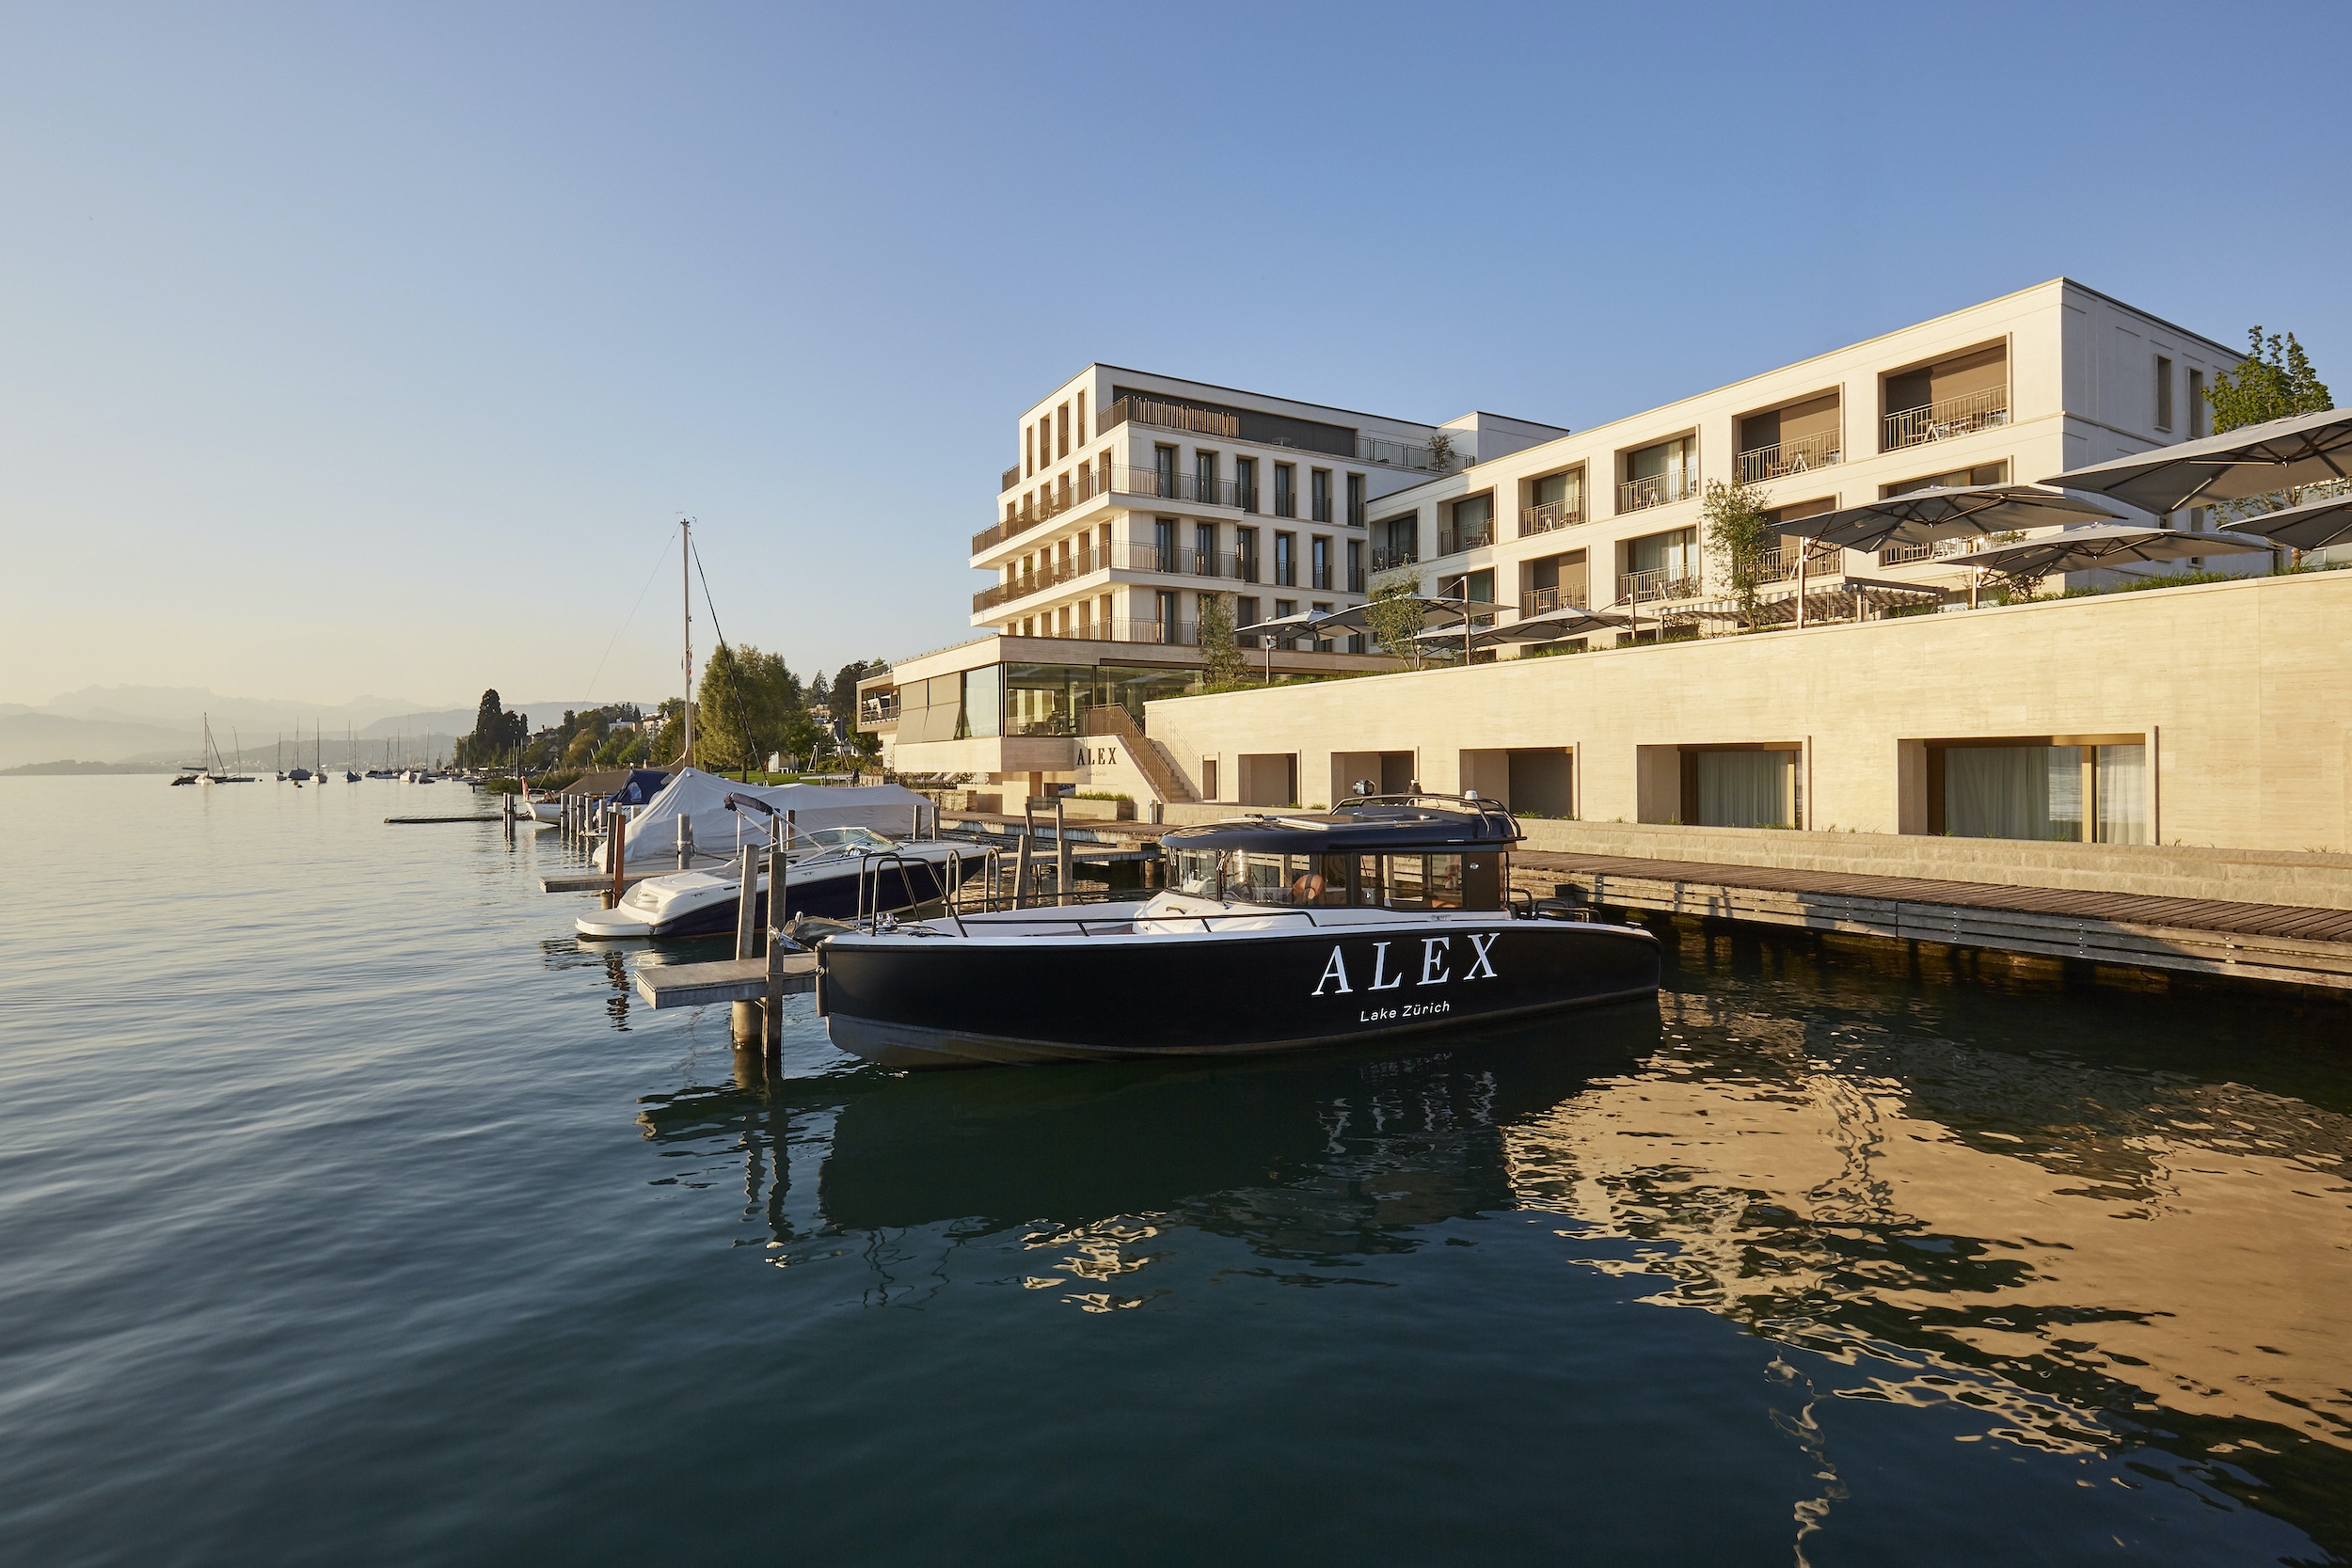 Alex Hotel - Lake Zürich